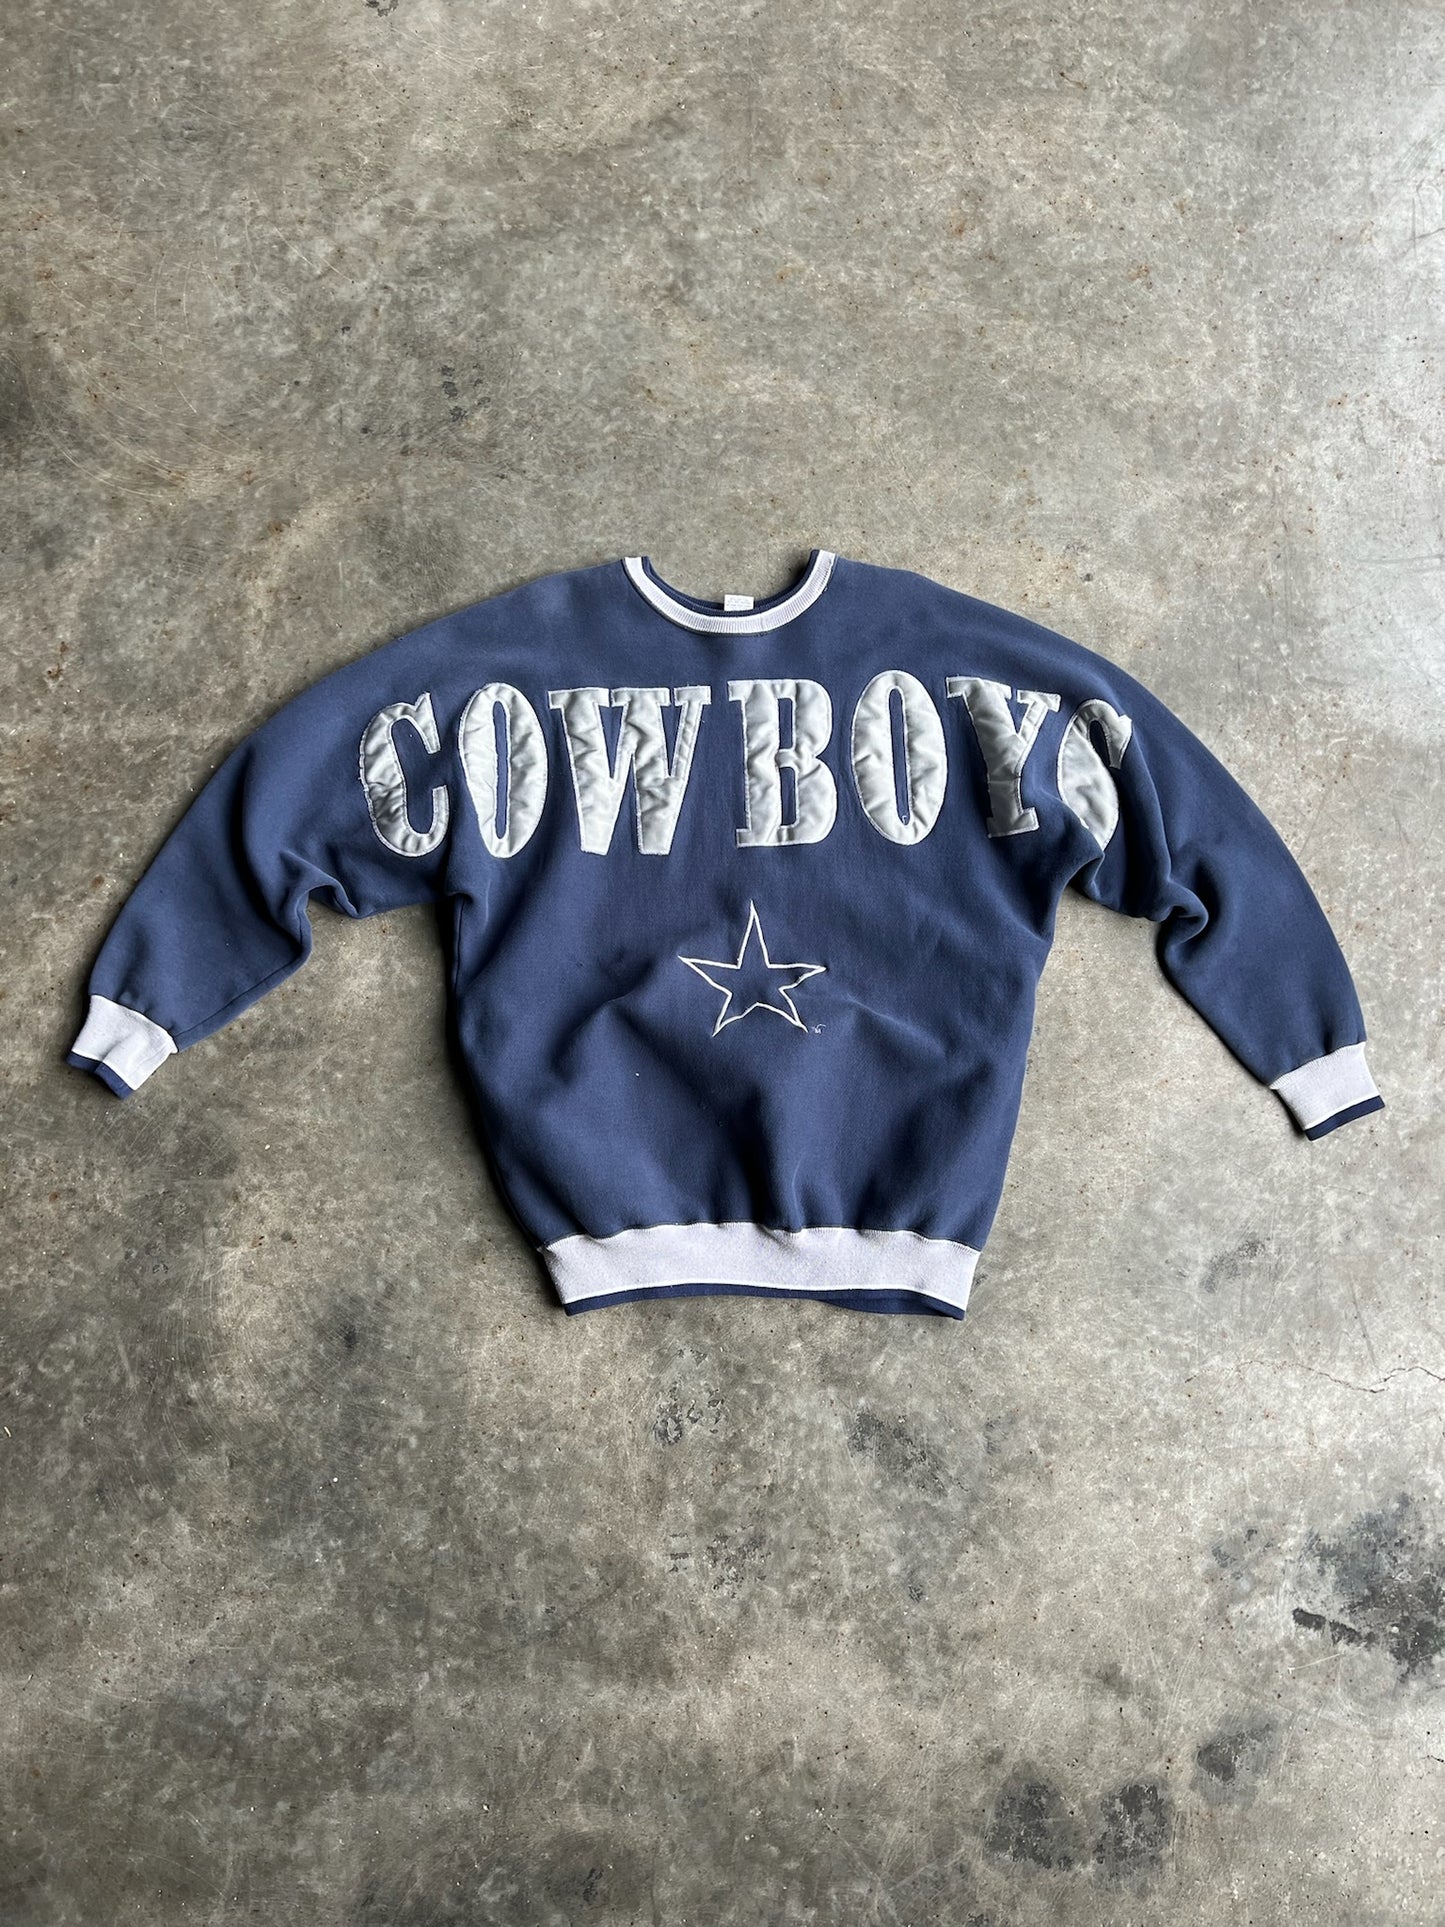 Vintage Dallas Cowboys Crew - XXL